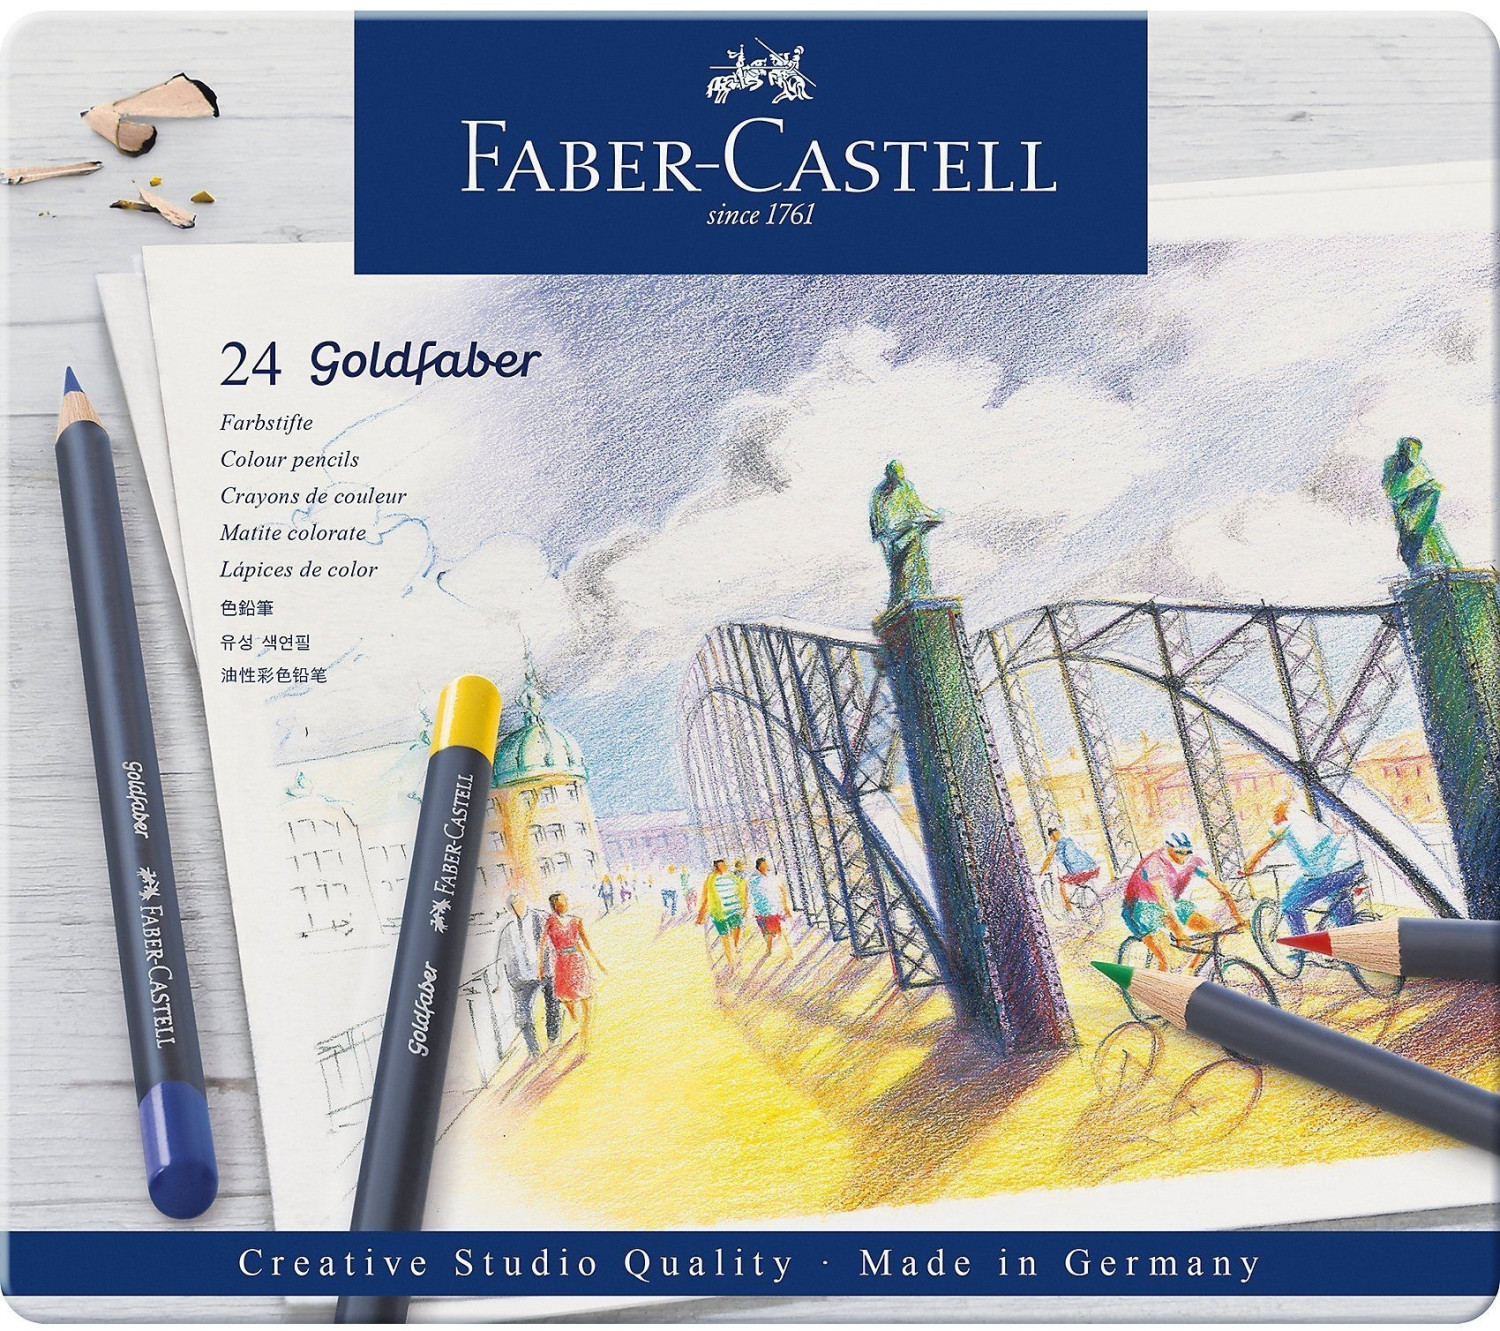 Faber-Castell - Goldfaber Farbstift, 24er Metalletui (114724)